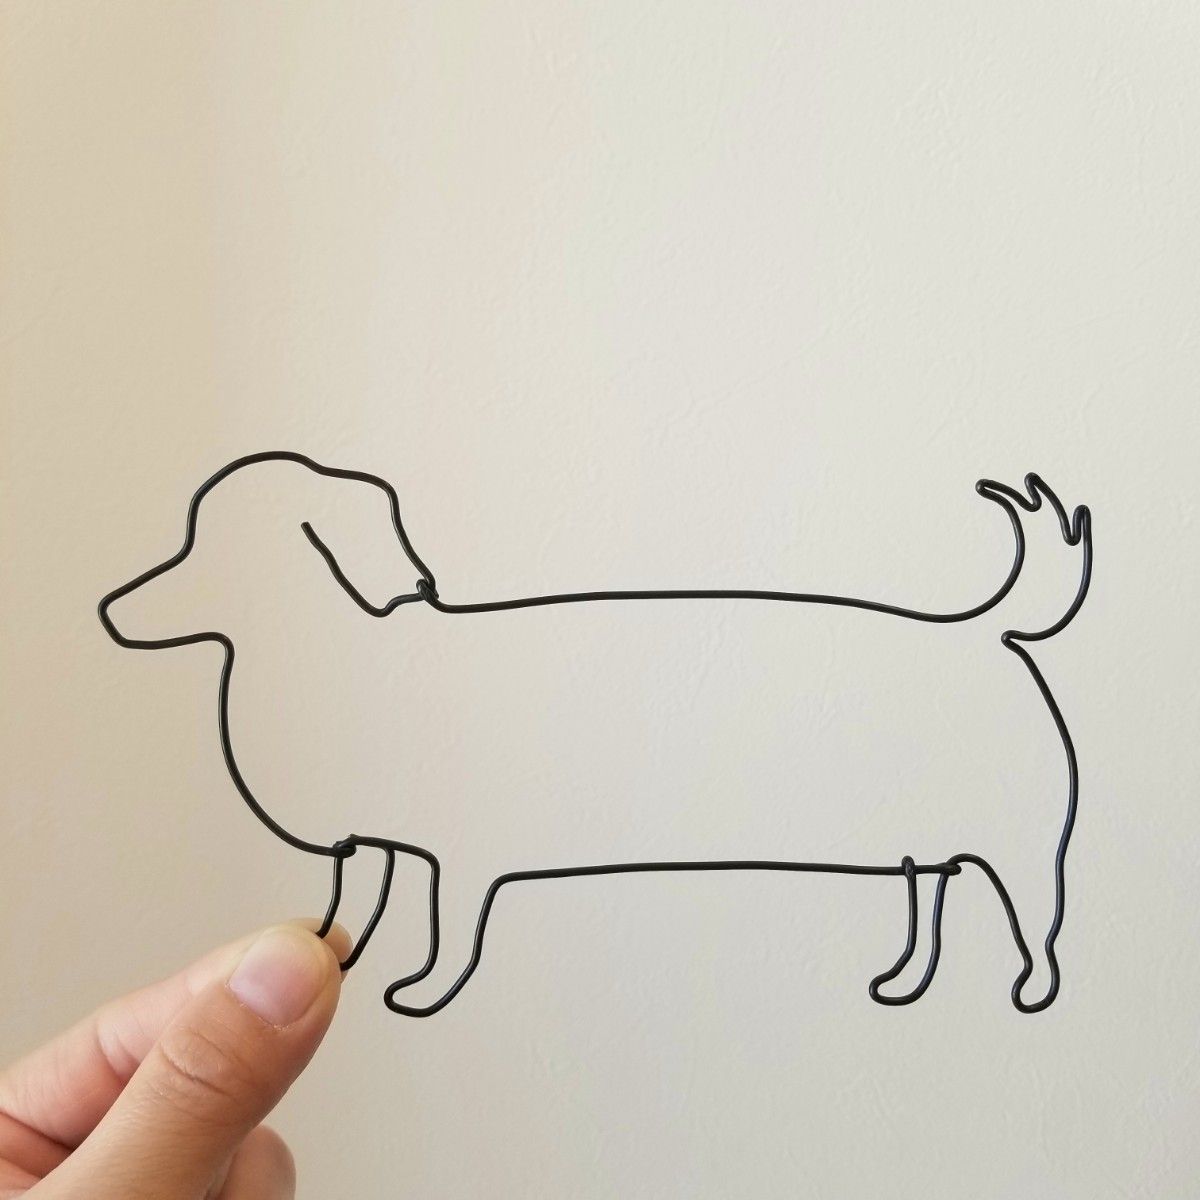 【 ダックスフンド のさんぽ 】 ワイヤーアート 壁飾り 飾り 犬 ワイヤークラフト ウォールデコ インテリア雑貨 かわいい